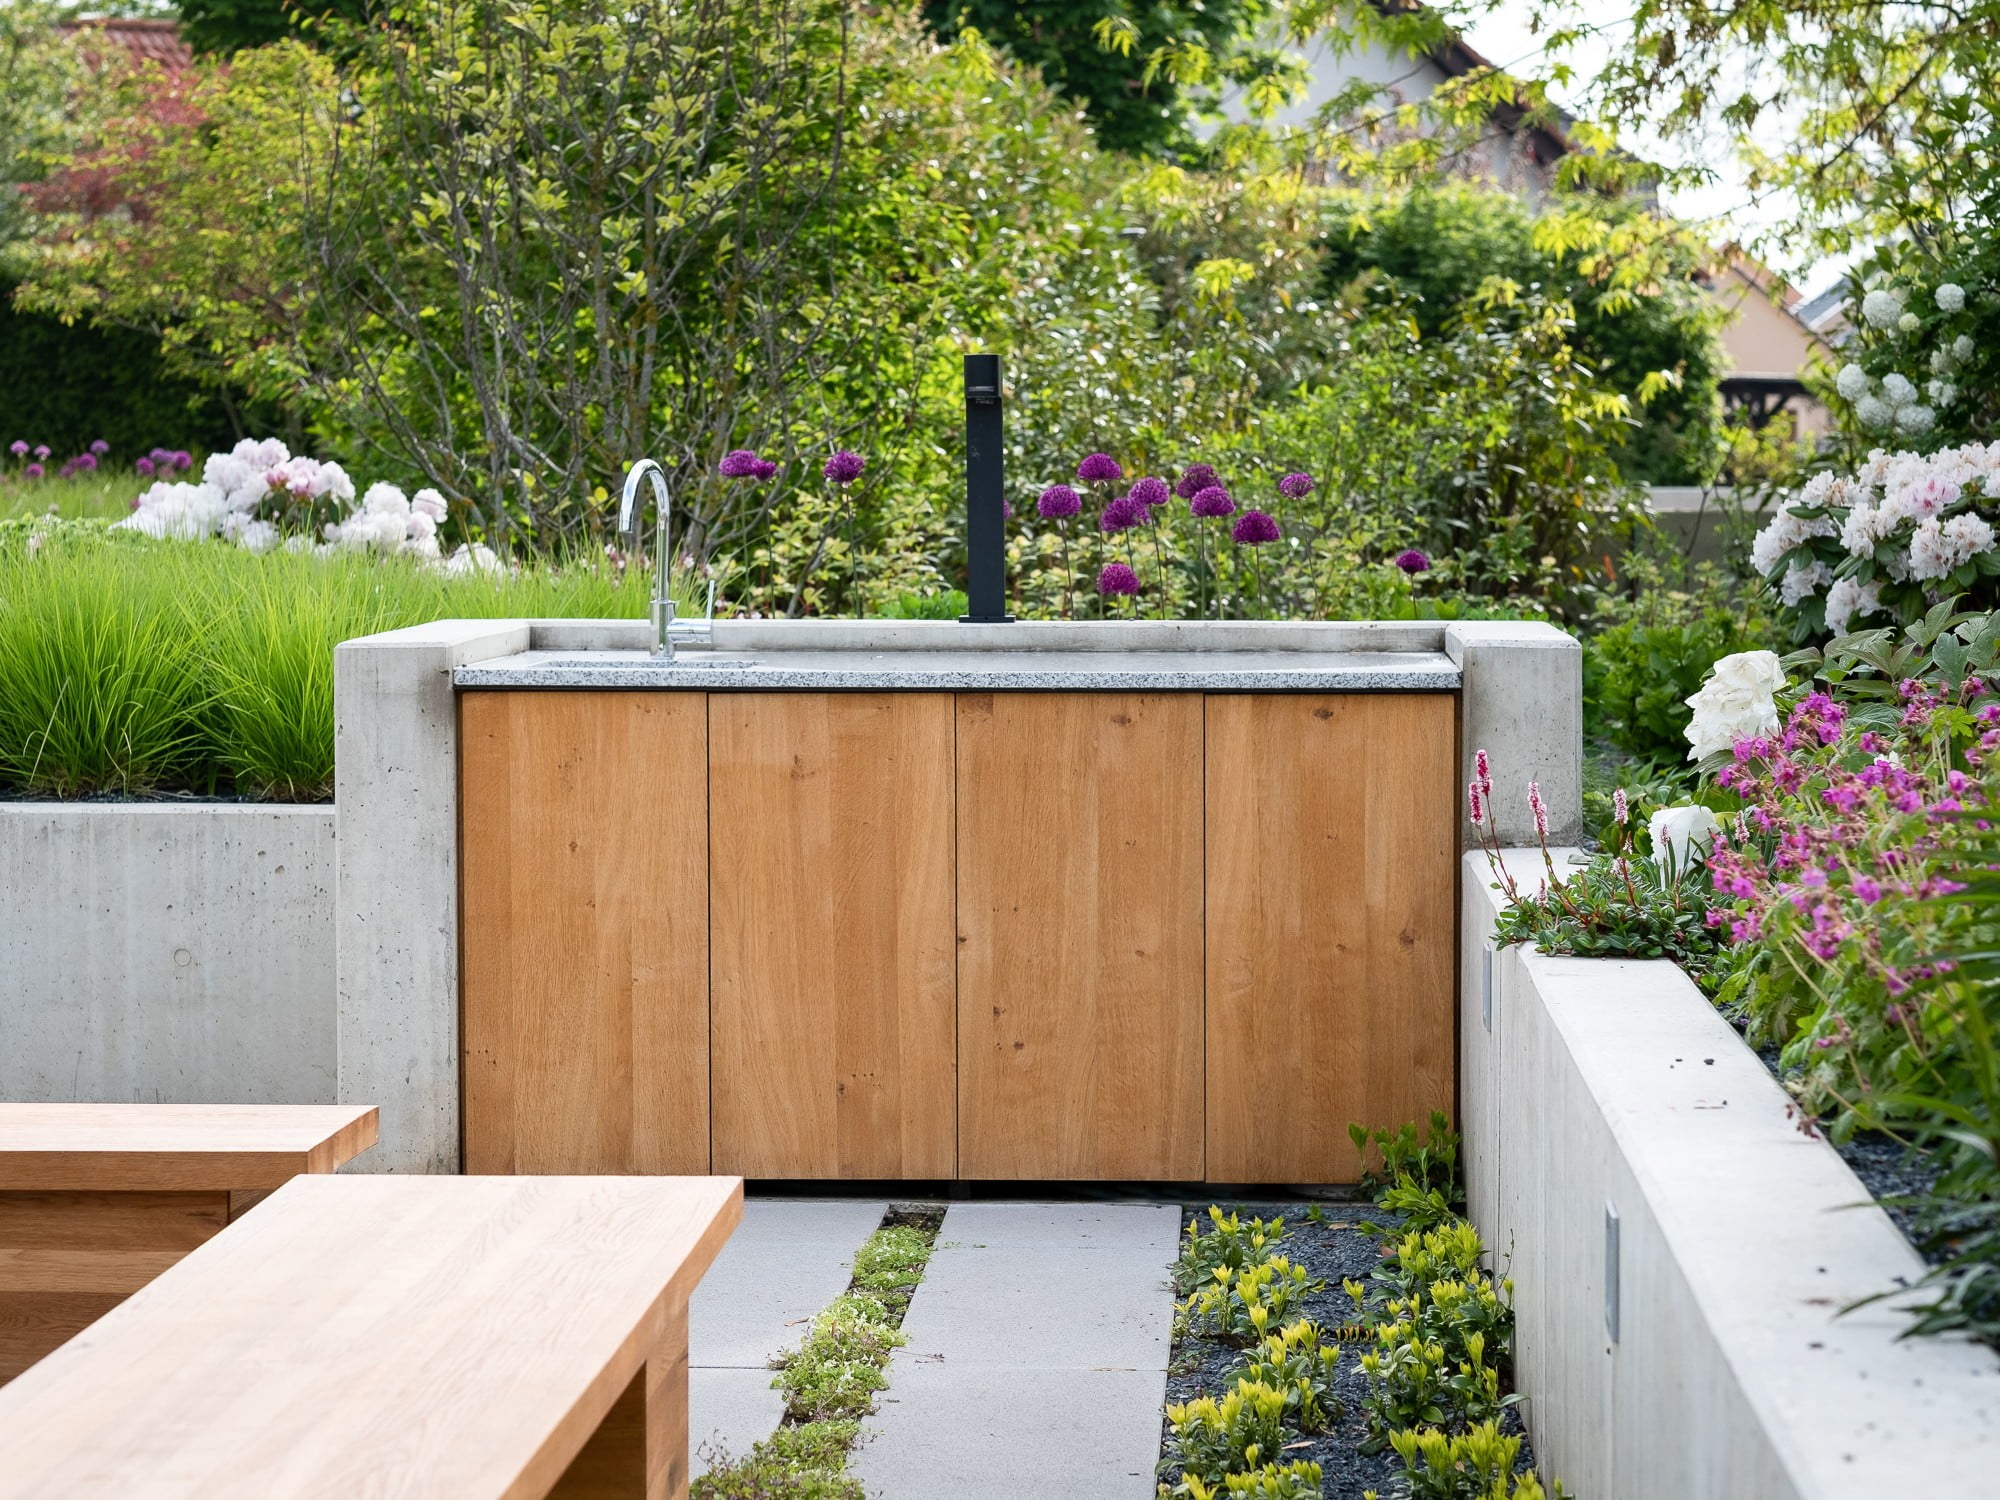 Építsd meg saját kültéri konyhádat - kombináld az olyan anyagokat, mint a beton, a kő és a fa.